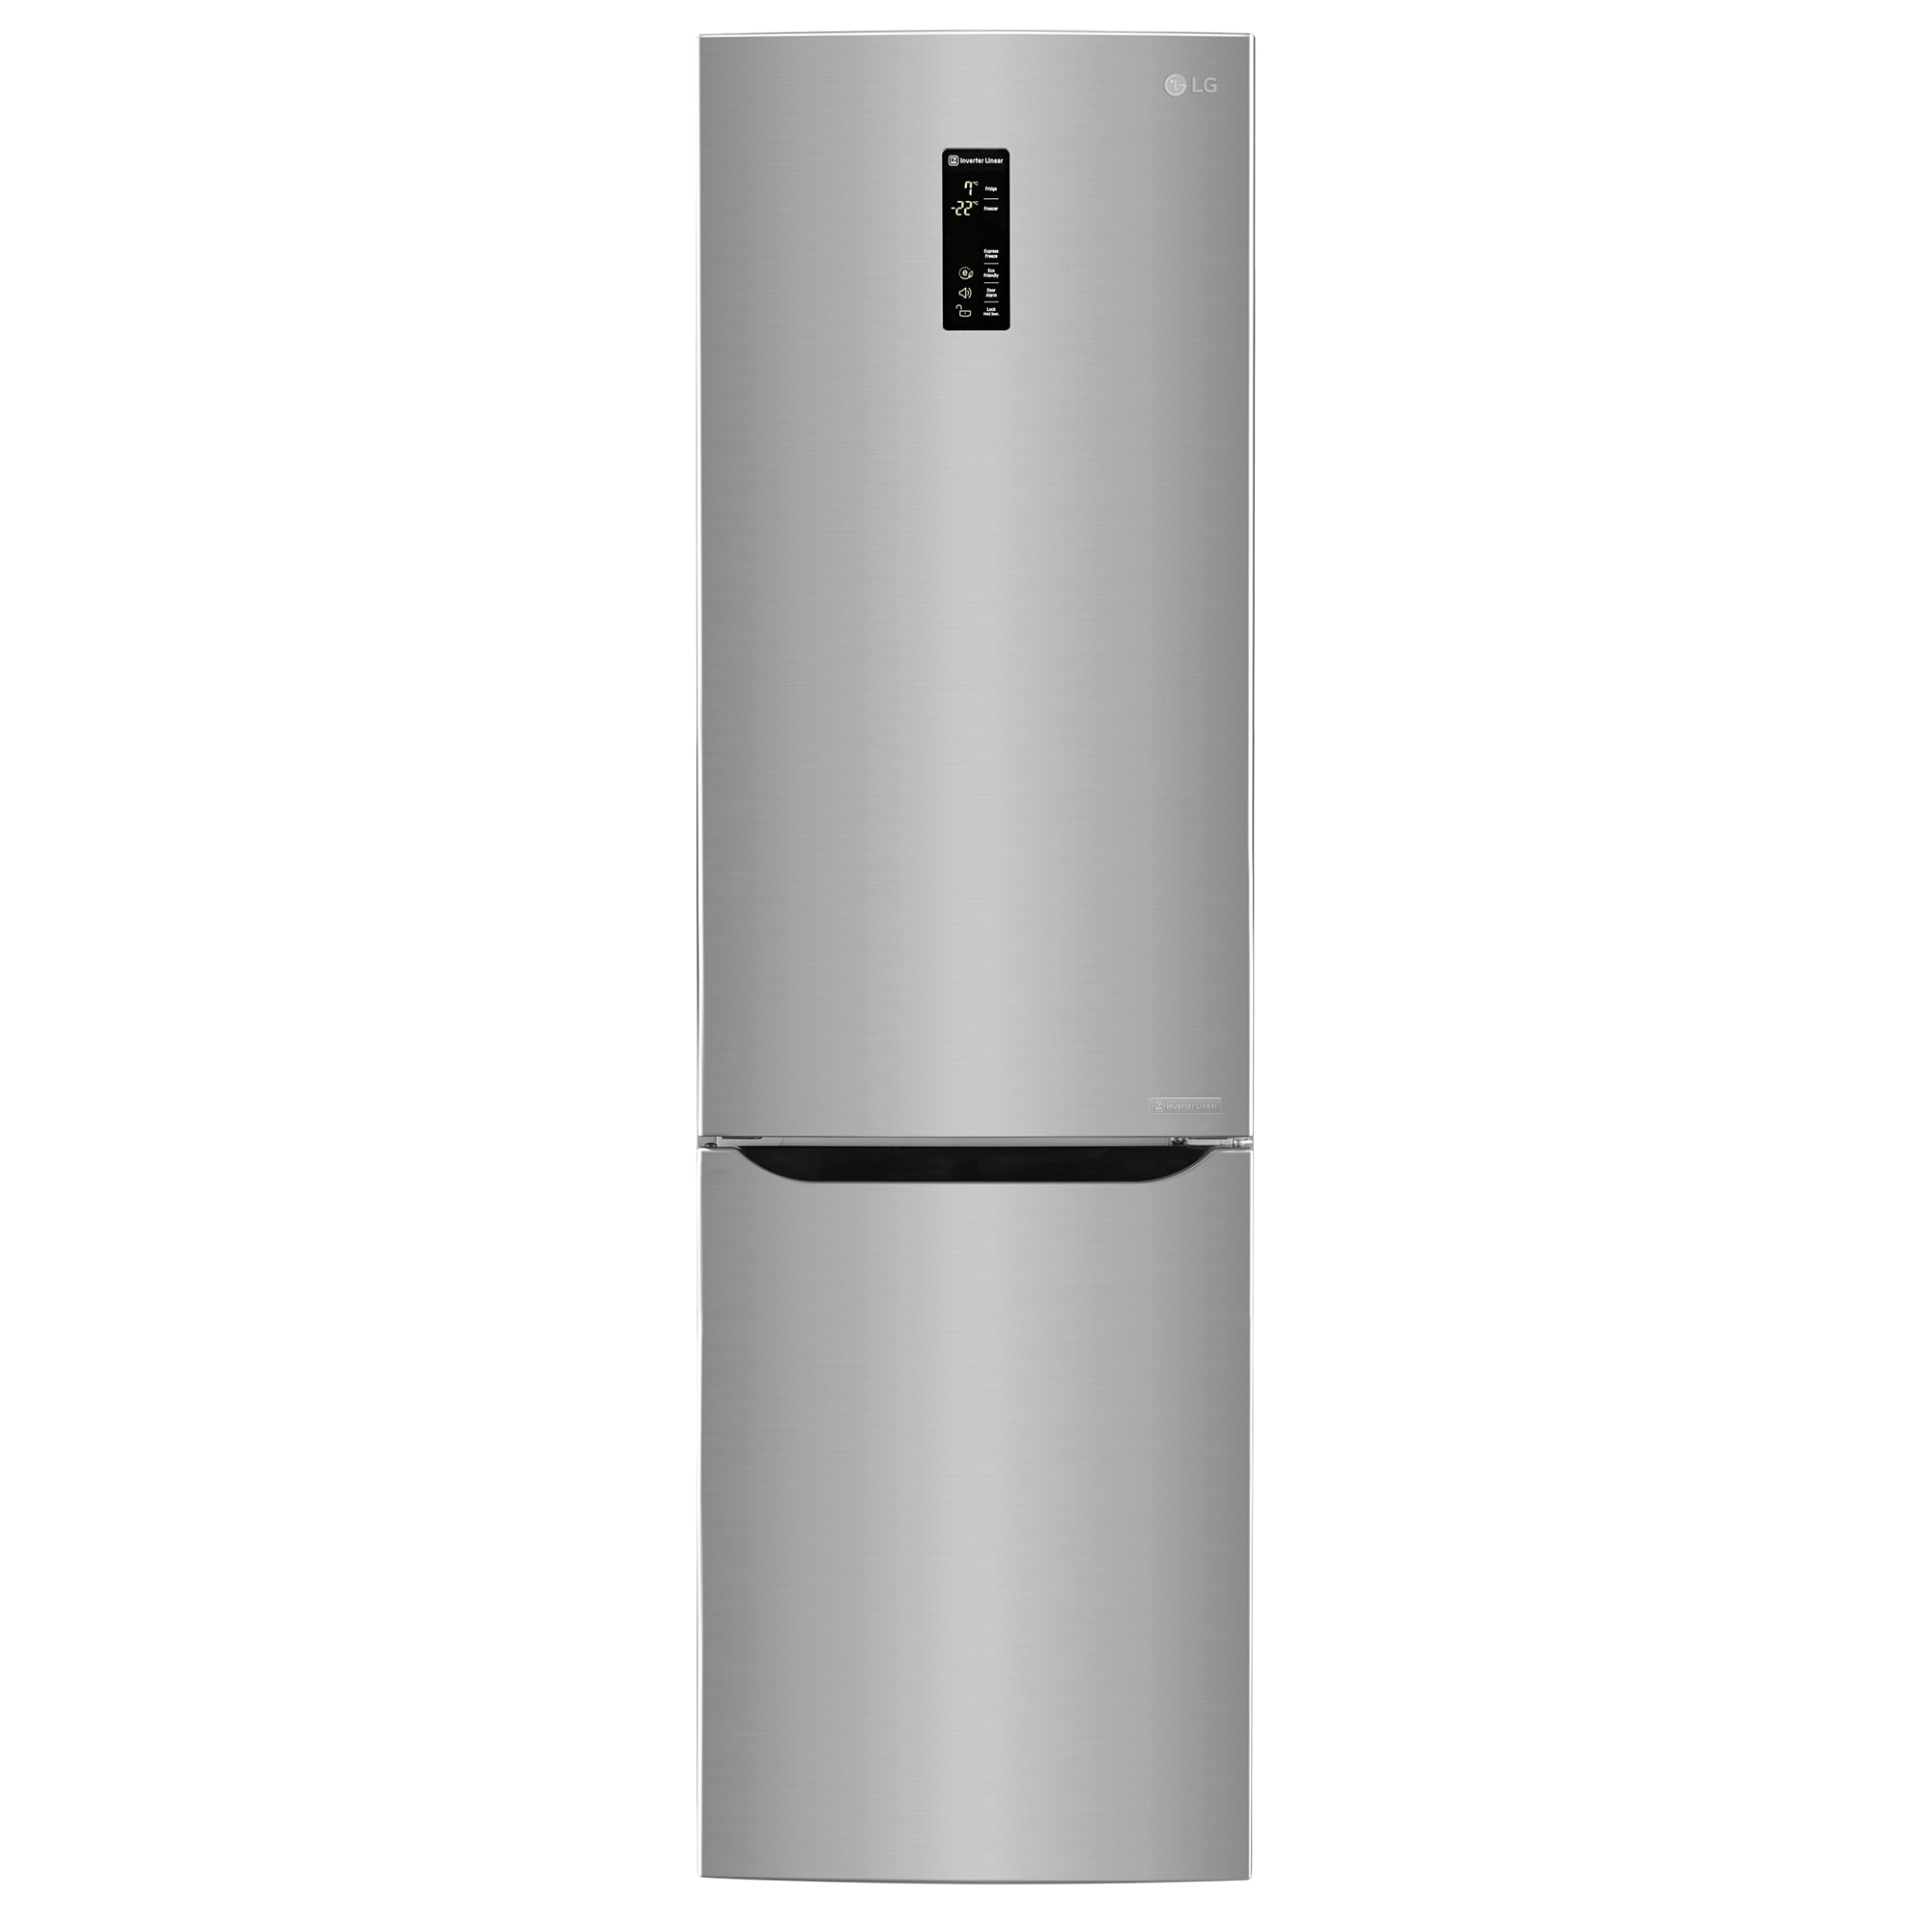 Хладилник LG GBB60PZDZS с обем от 343 л.